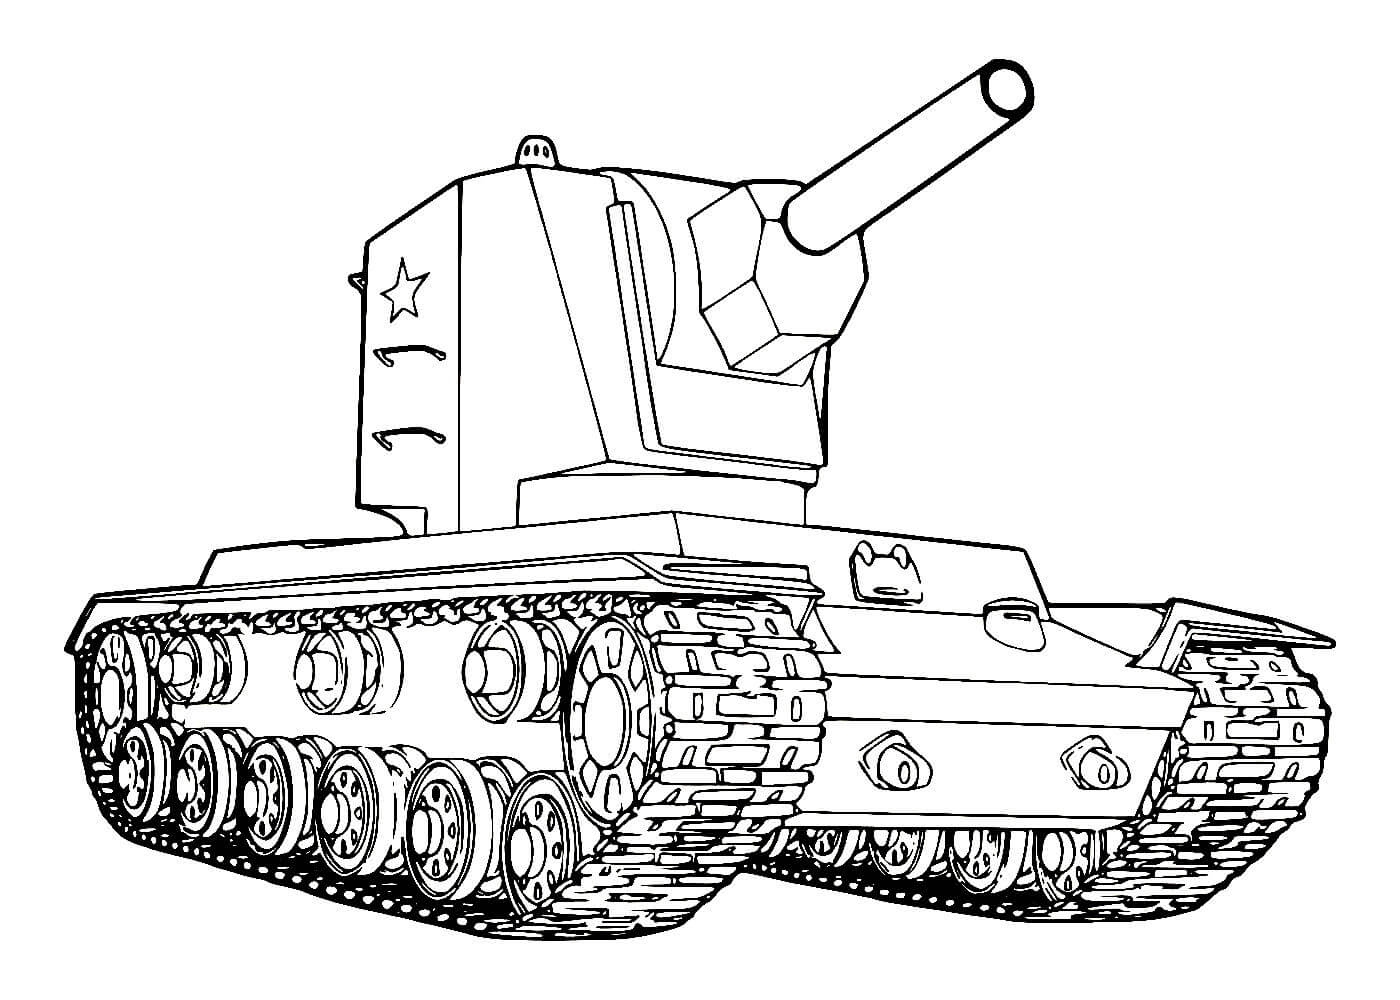 Раскраска гранд танк для детей 4-5 лет